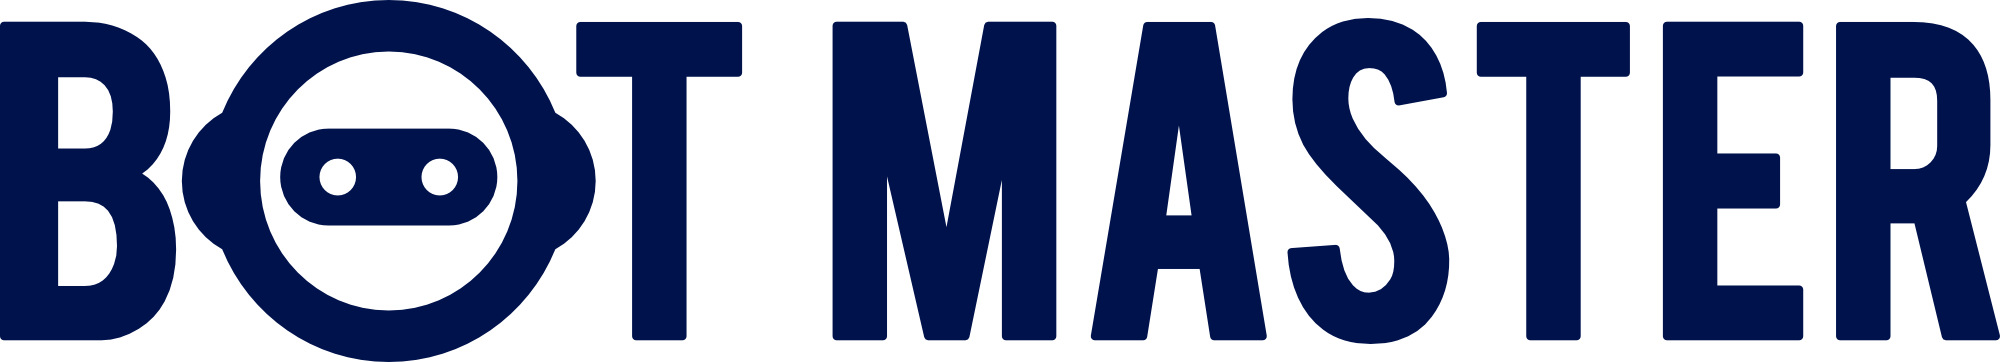 Logo Botmaster